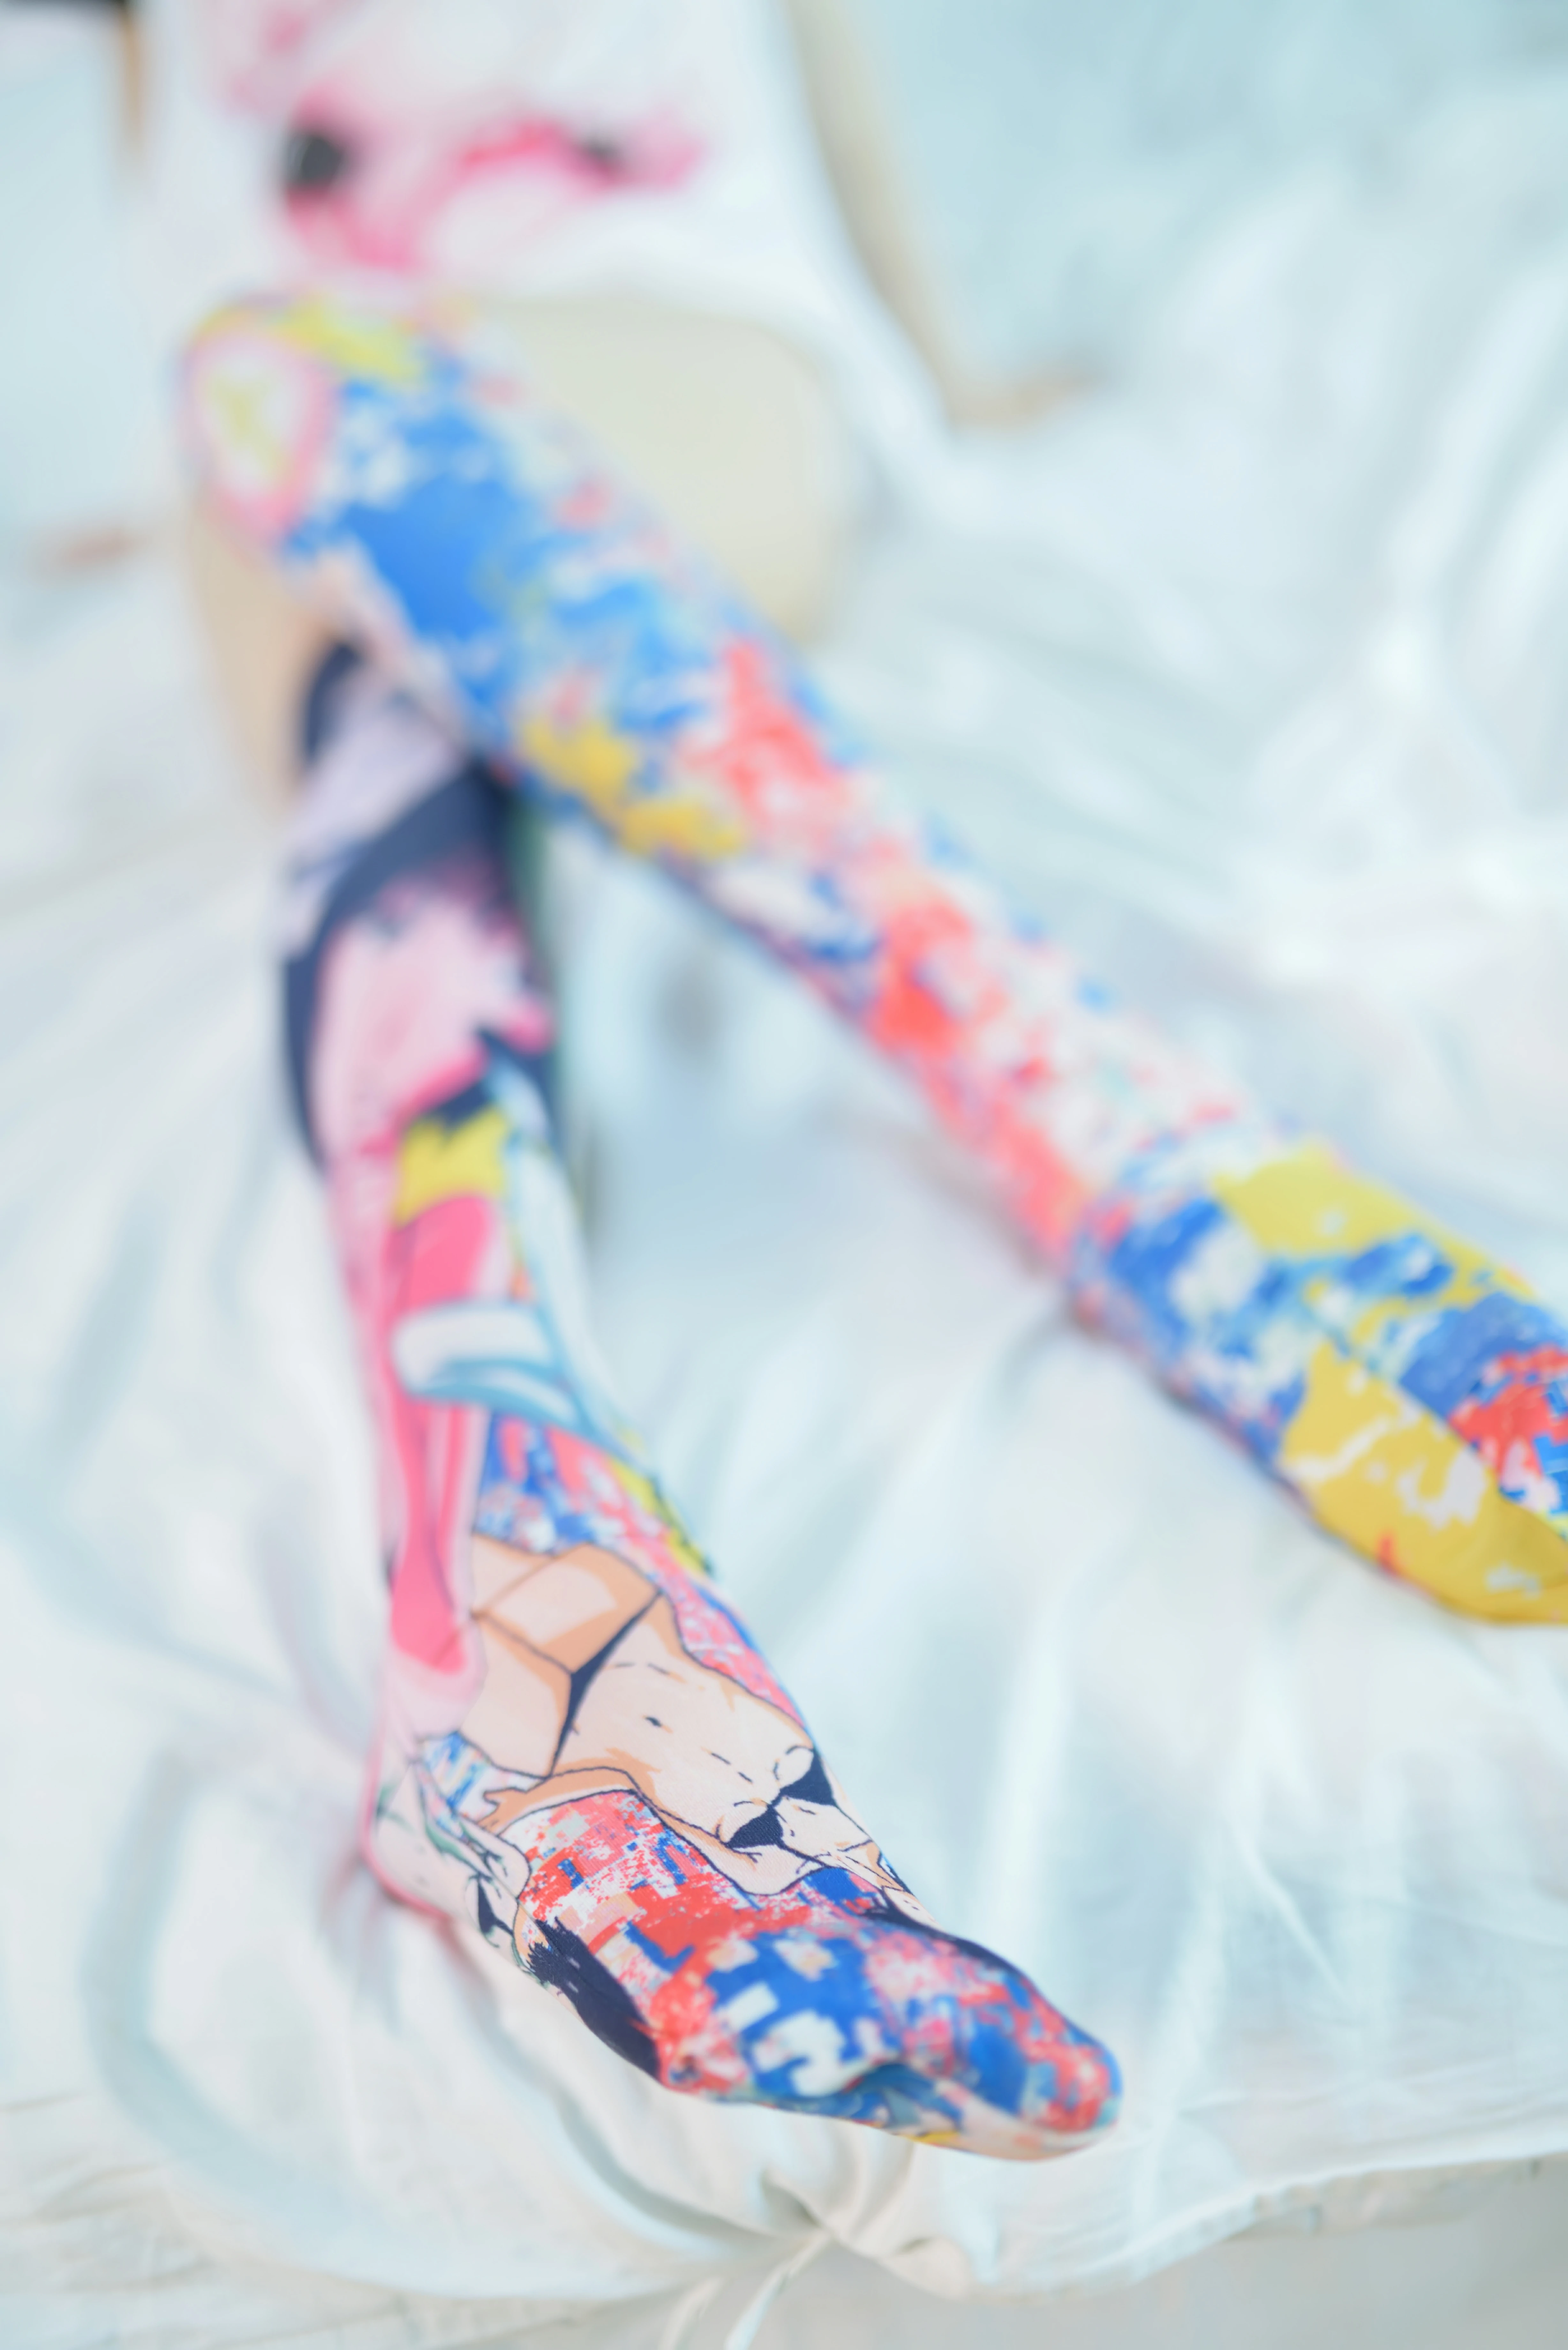 网红清纯少女 NAGISA魔物喵 电子写真 白色短袖加彩色丝袜美腿性感写真,